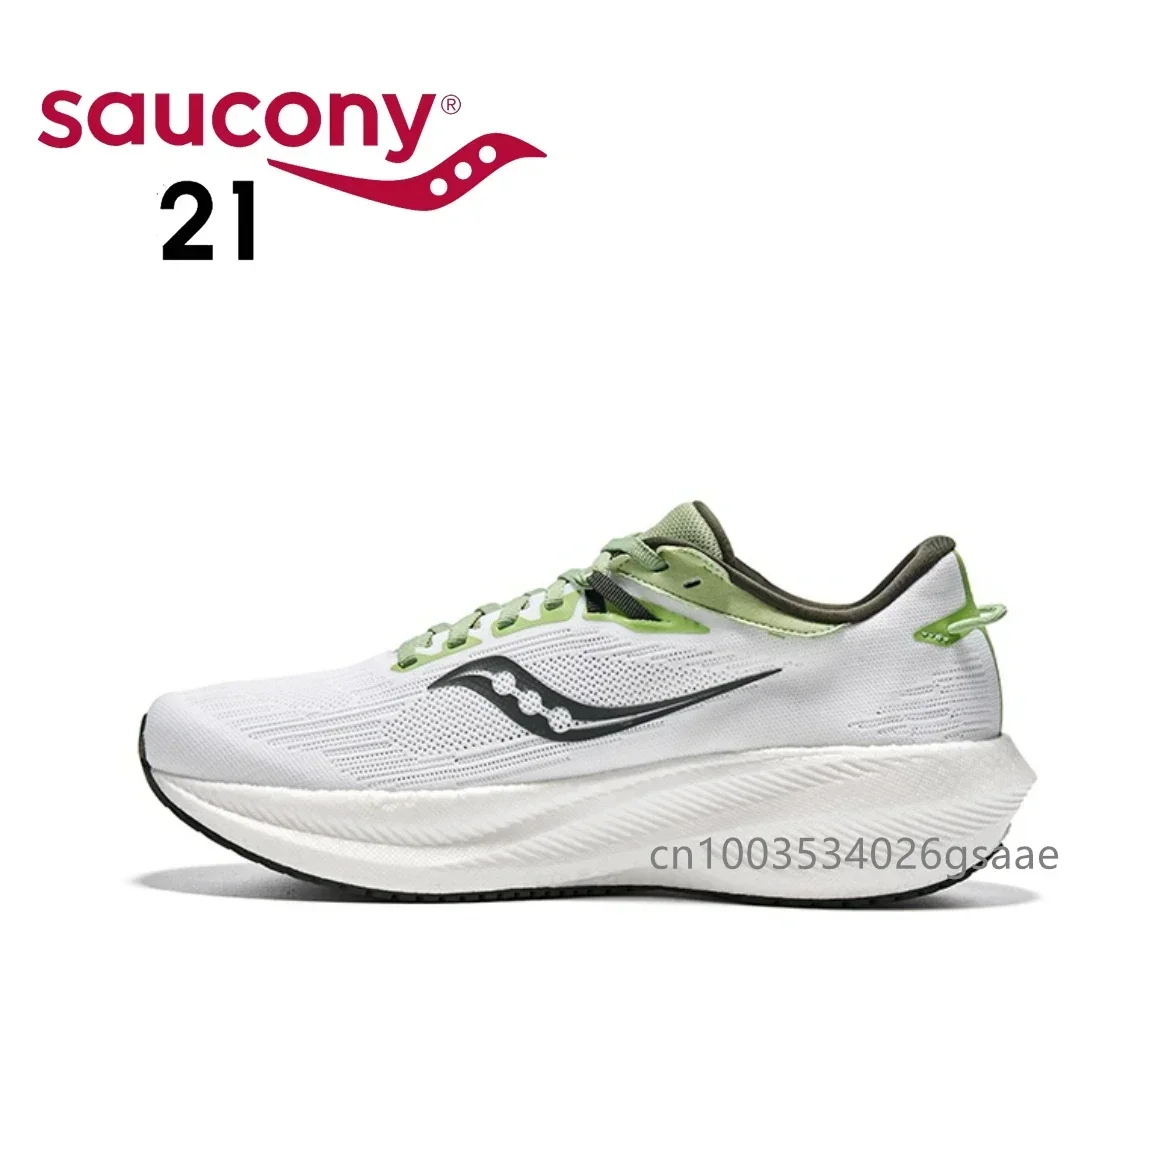 

Оригинальные мужские противоударные кроссовки Saucony Victory 21 с подошвой из попкорна, повседневные кроссовки для бега, Спортивная амортизирующая эргономичная обувь